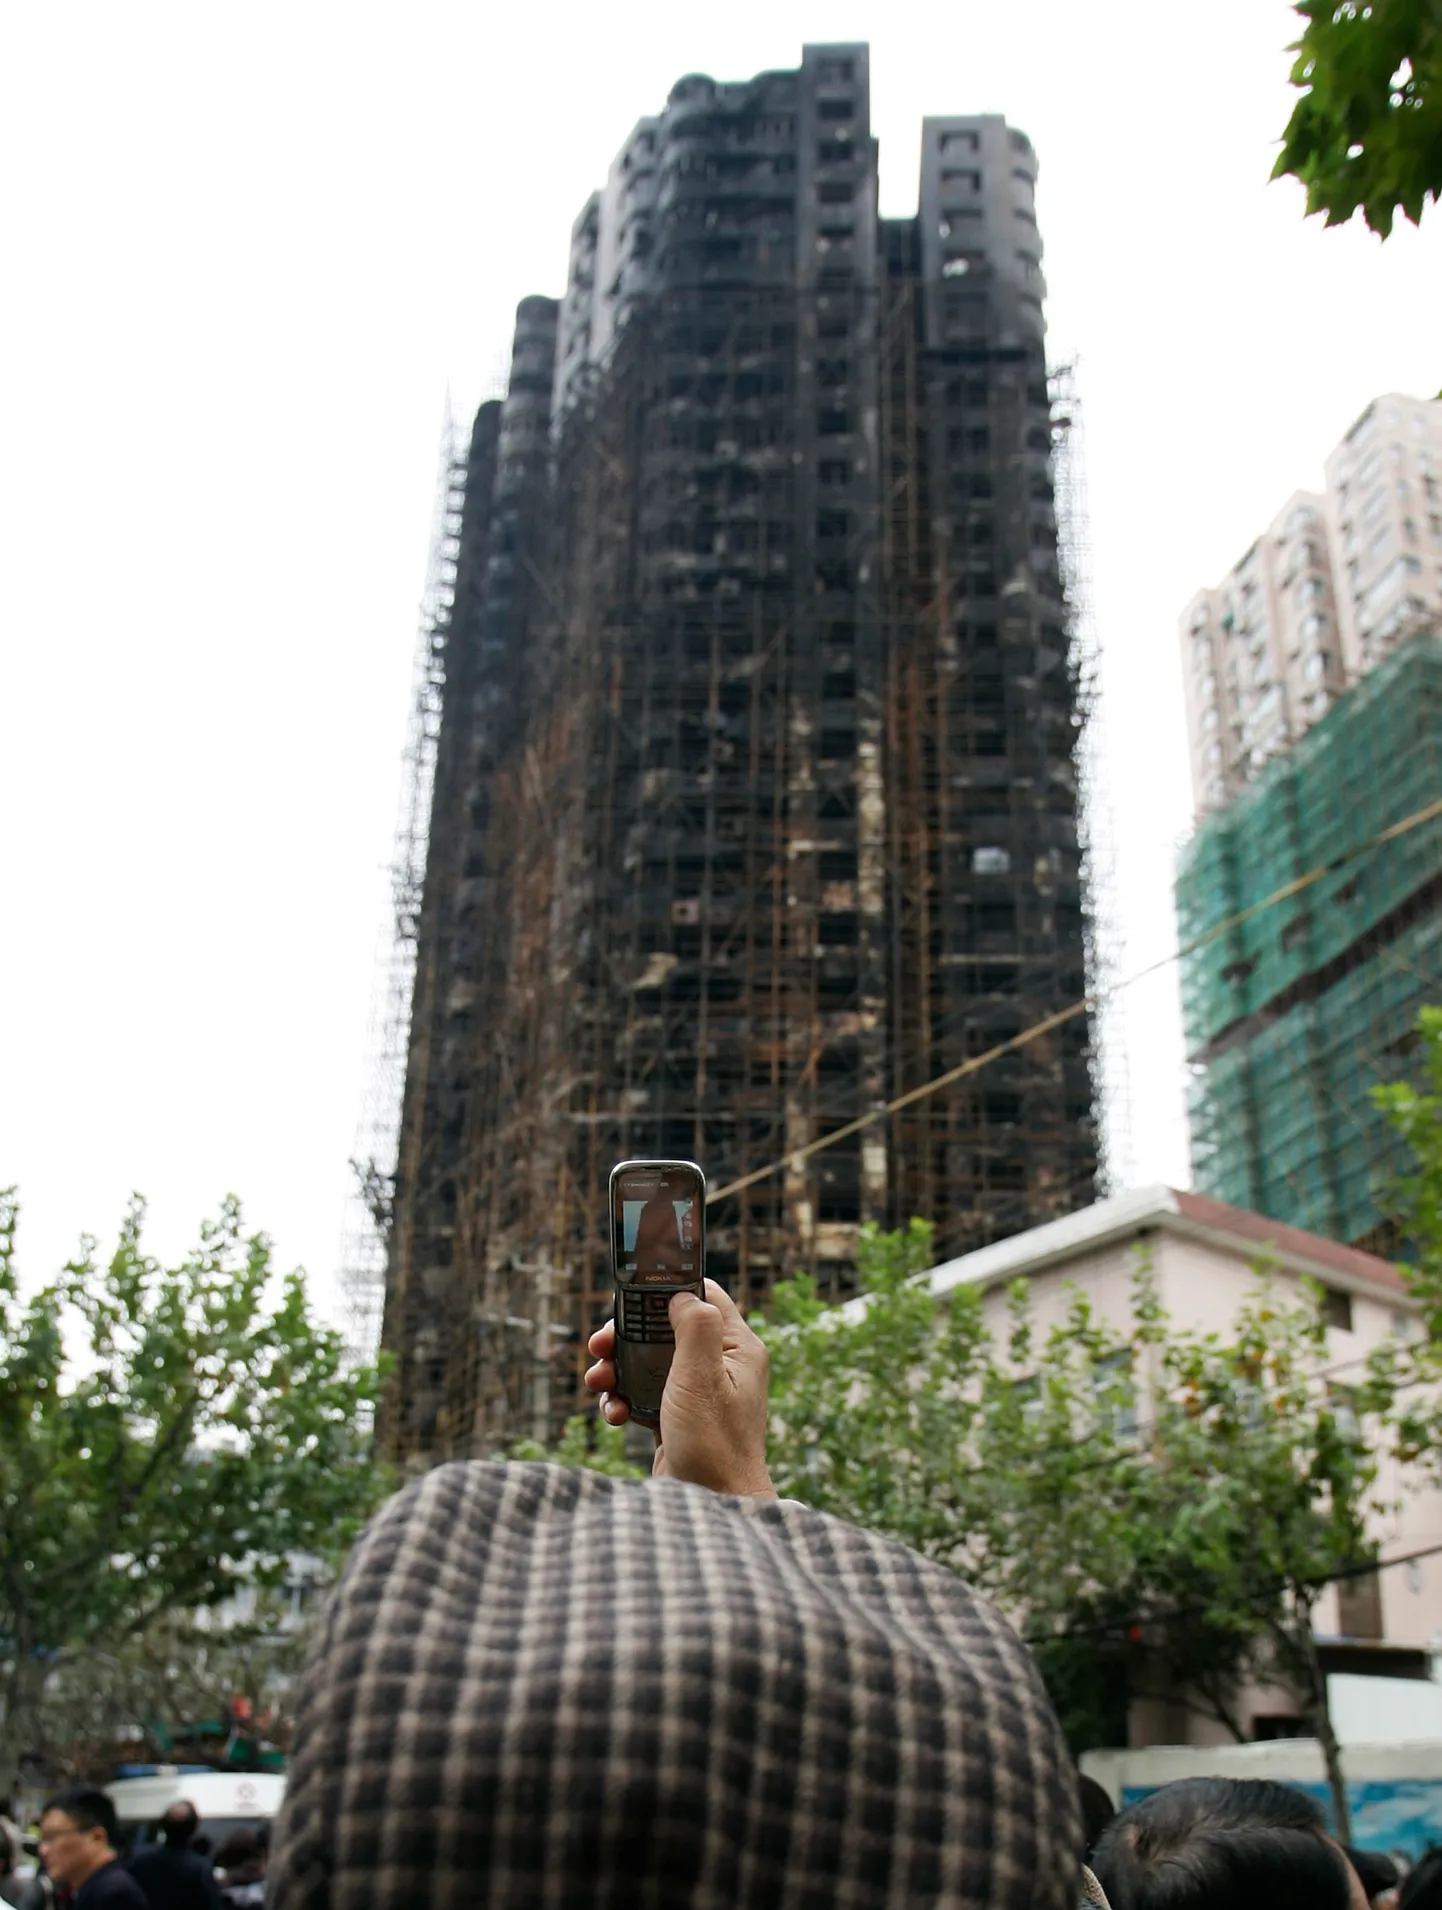 Многоквартирный дом в Шанхае после пожара.